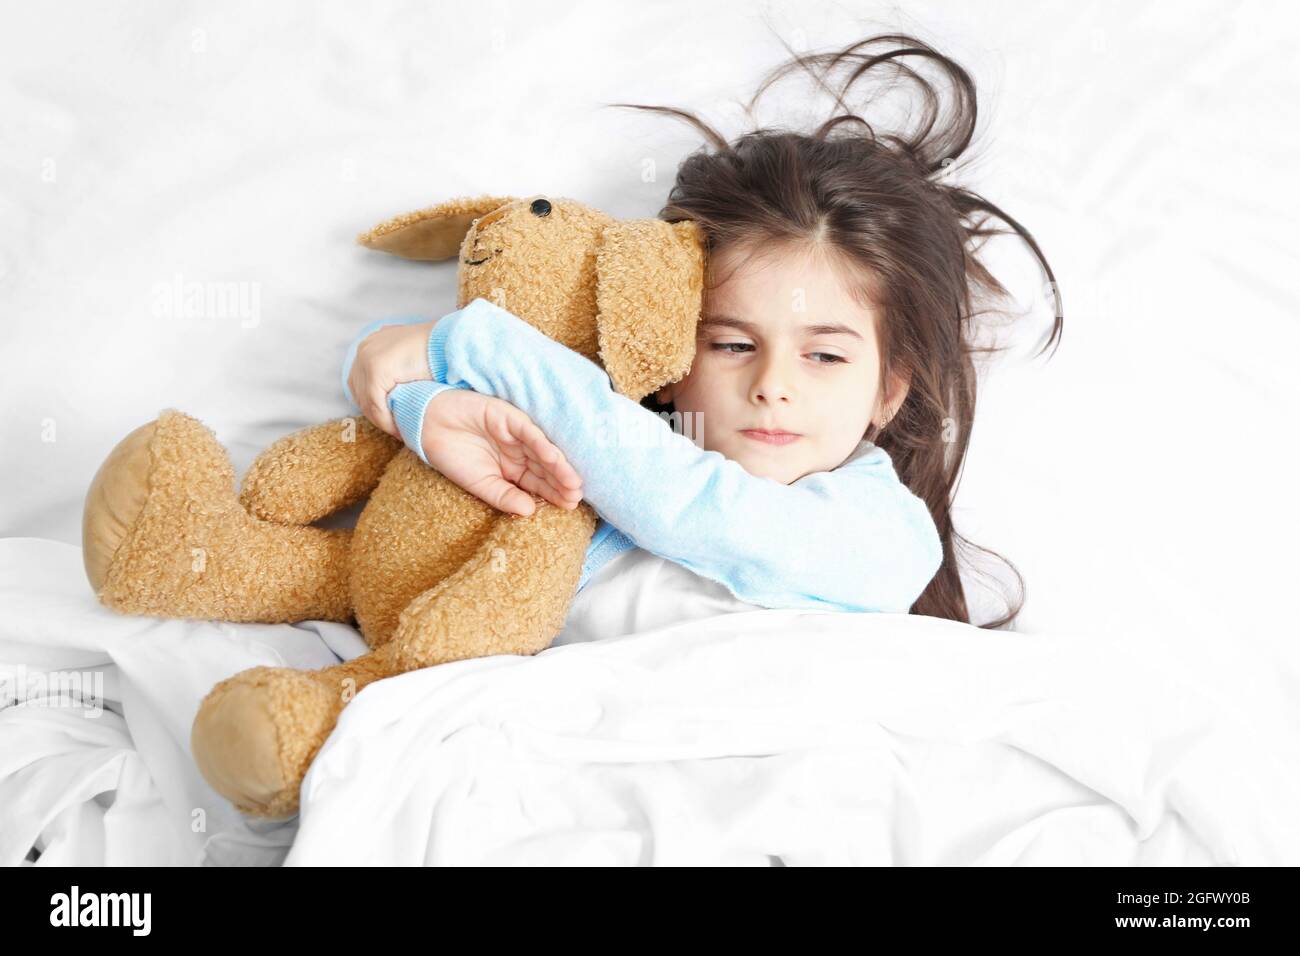 Nettes kleines Mädchen im Bett mit Kuscheltier liegen Stockfotografie -  Alamy